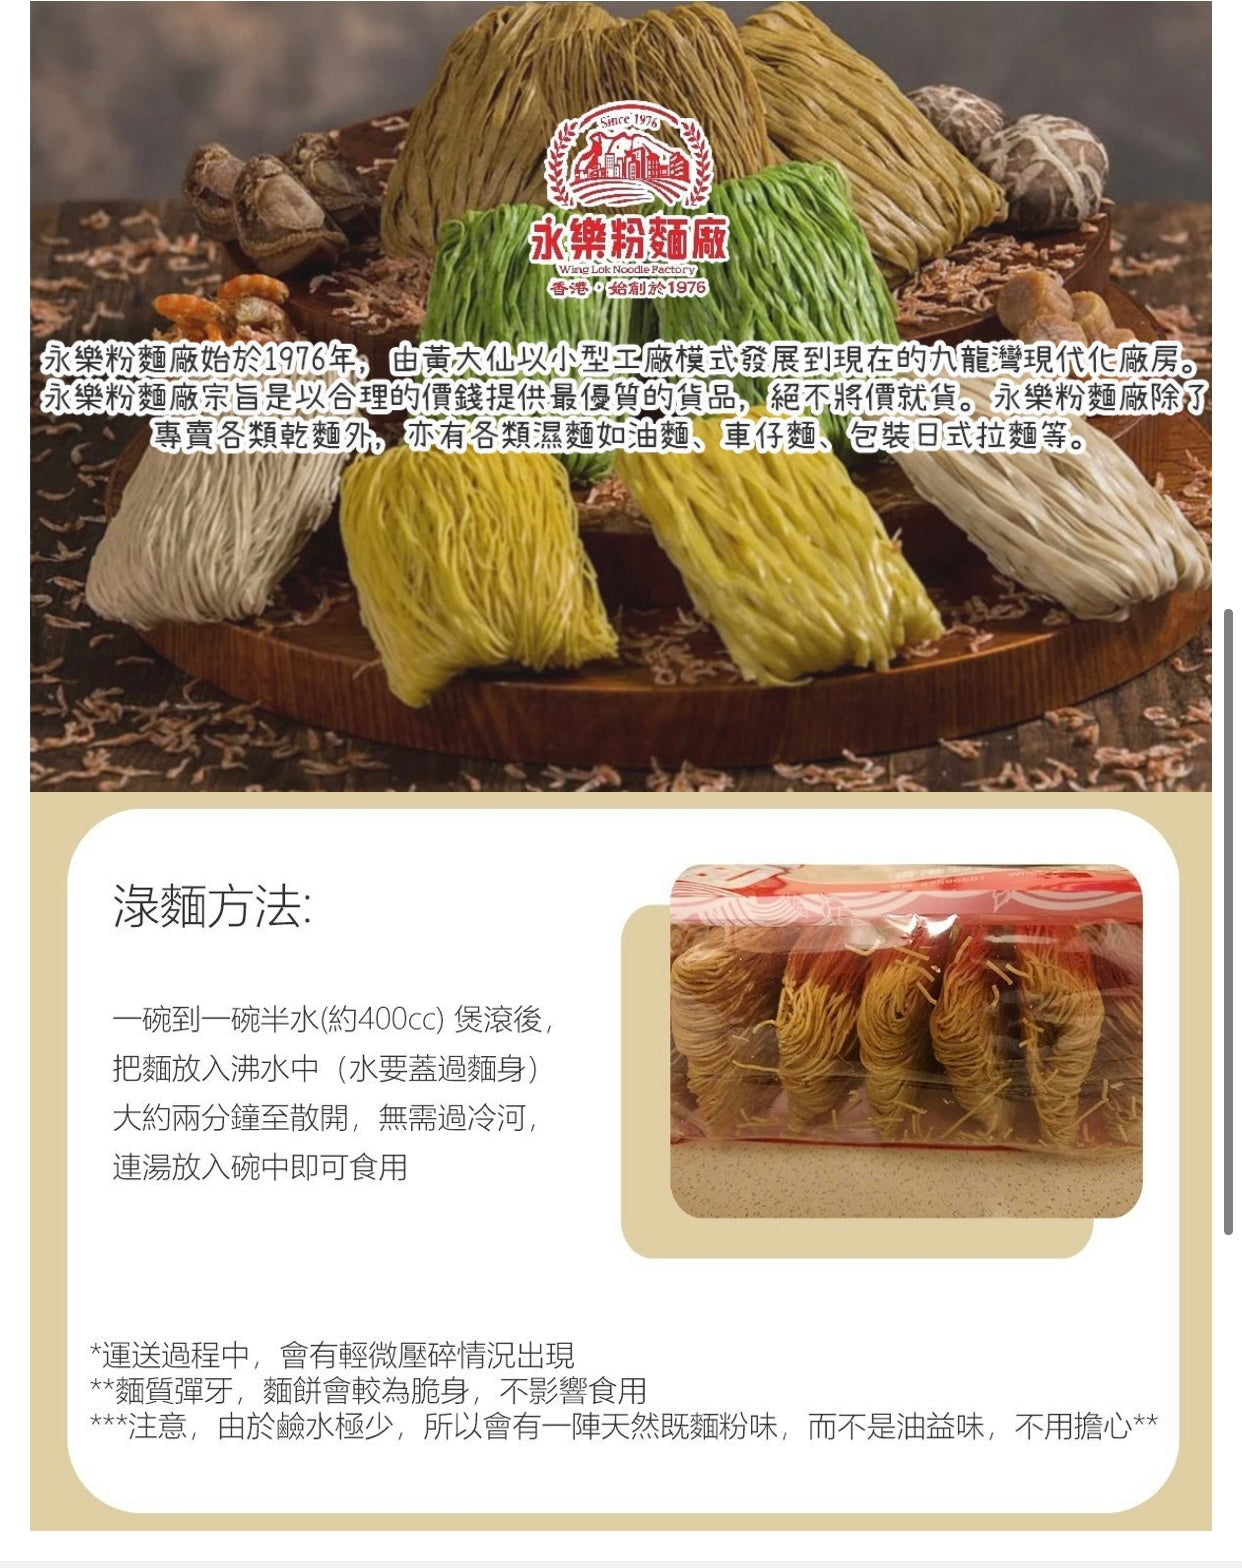 永樂粉麵廠 - 特濃蝦子麵